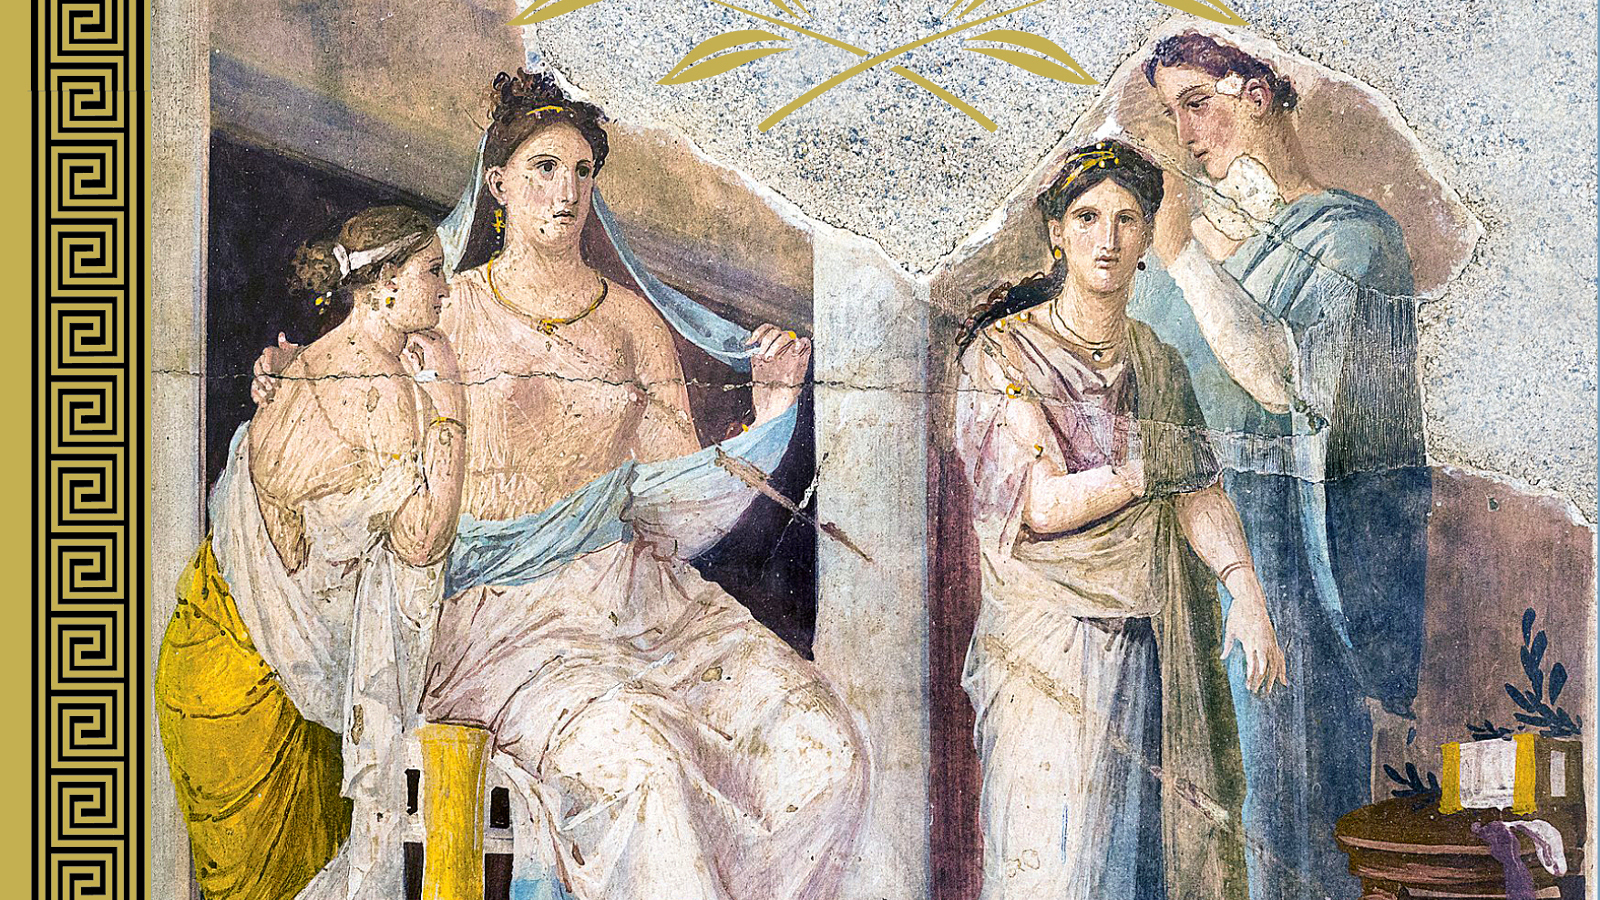 Kuvassa on osa kirjan kannesta ja siinä on vasemmalla kelta-musta ornamentti. Kuvassa on maalaus, jossa on vasemmalla nainen ja tytär istumassa kreikkalainen vaalean kangas vaatteena alavartalossa. Vieressä seisoo kaksi naista vaalean sinisessä vaatteessa. Taustalla on kivirakennuksen sisäosaa.